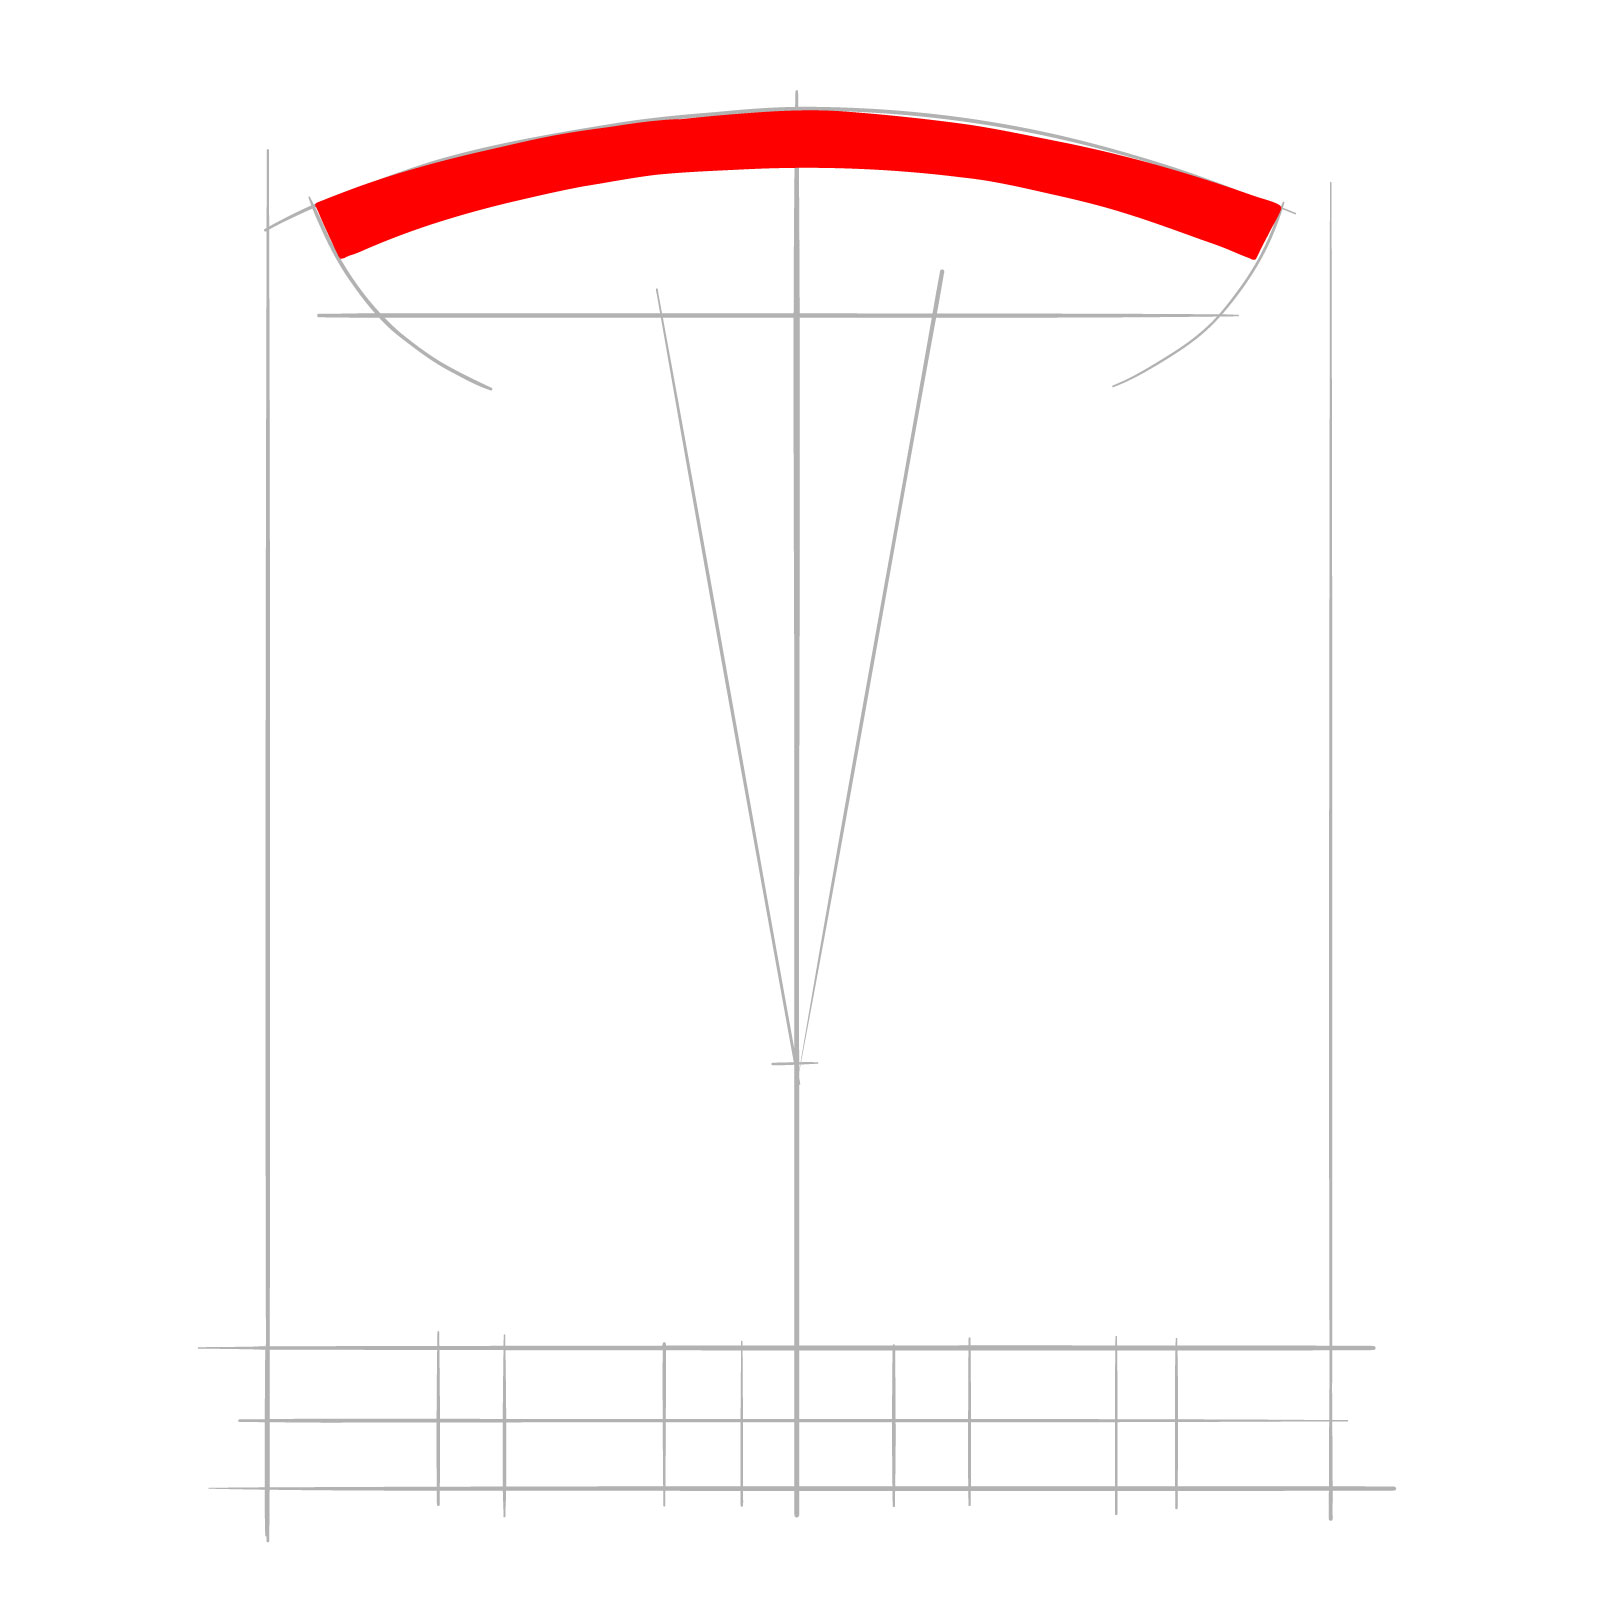 How to draw the Tesla logo - step 04